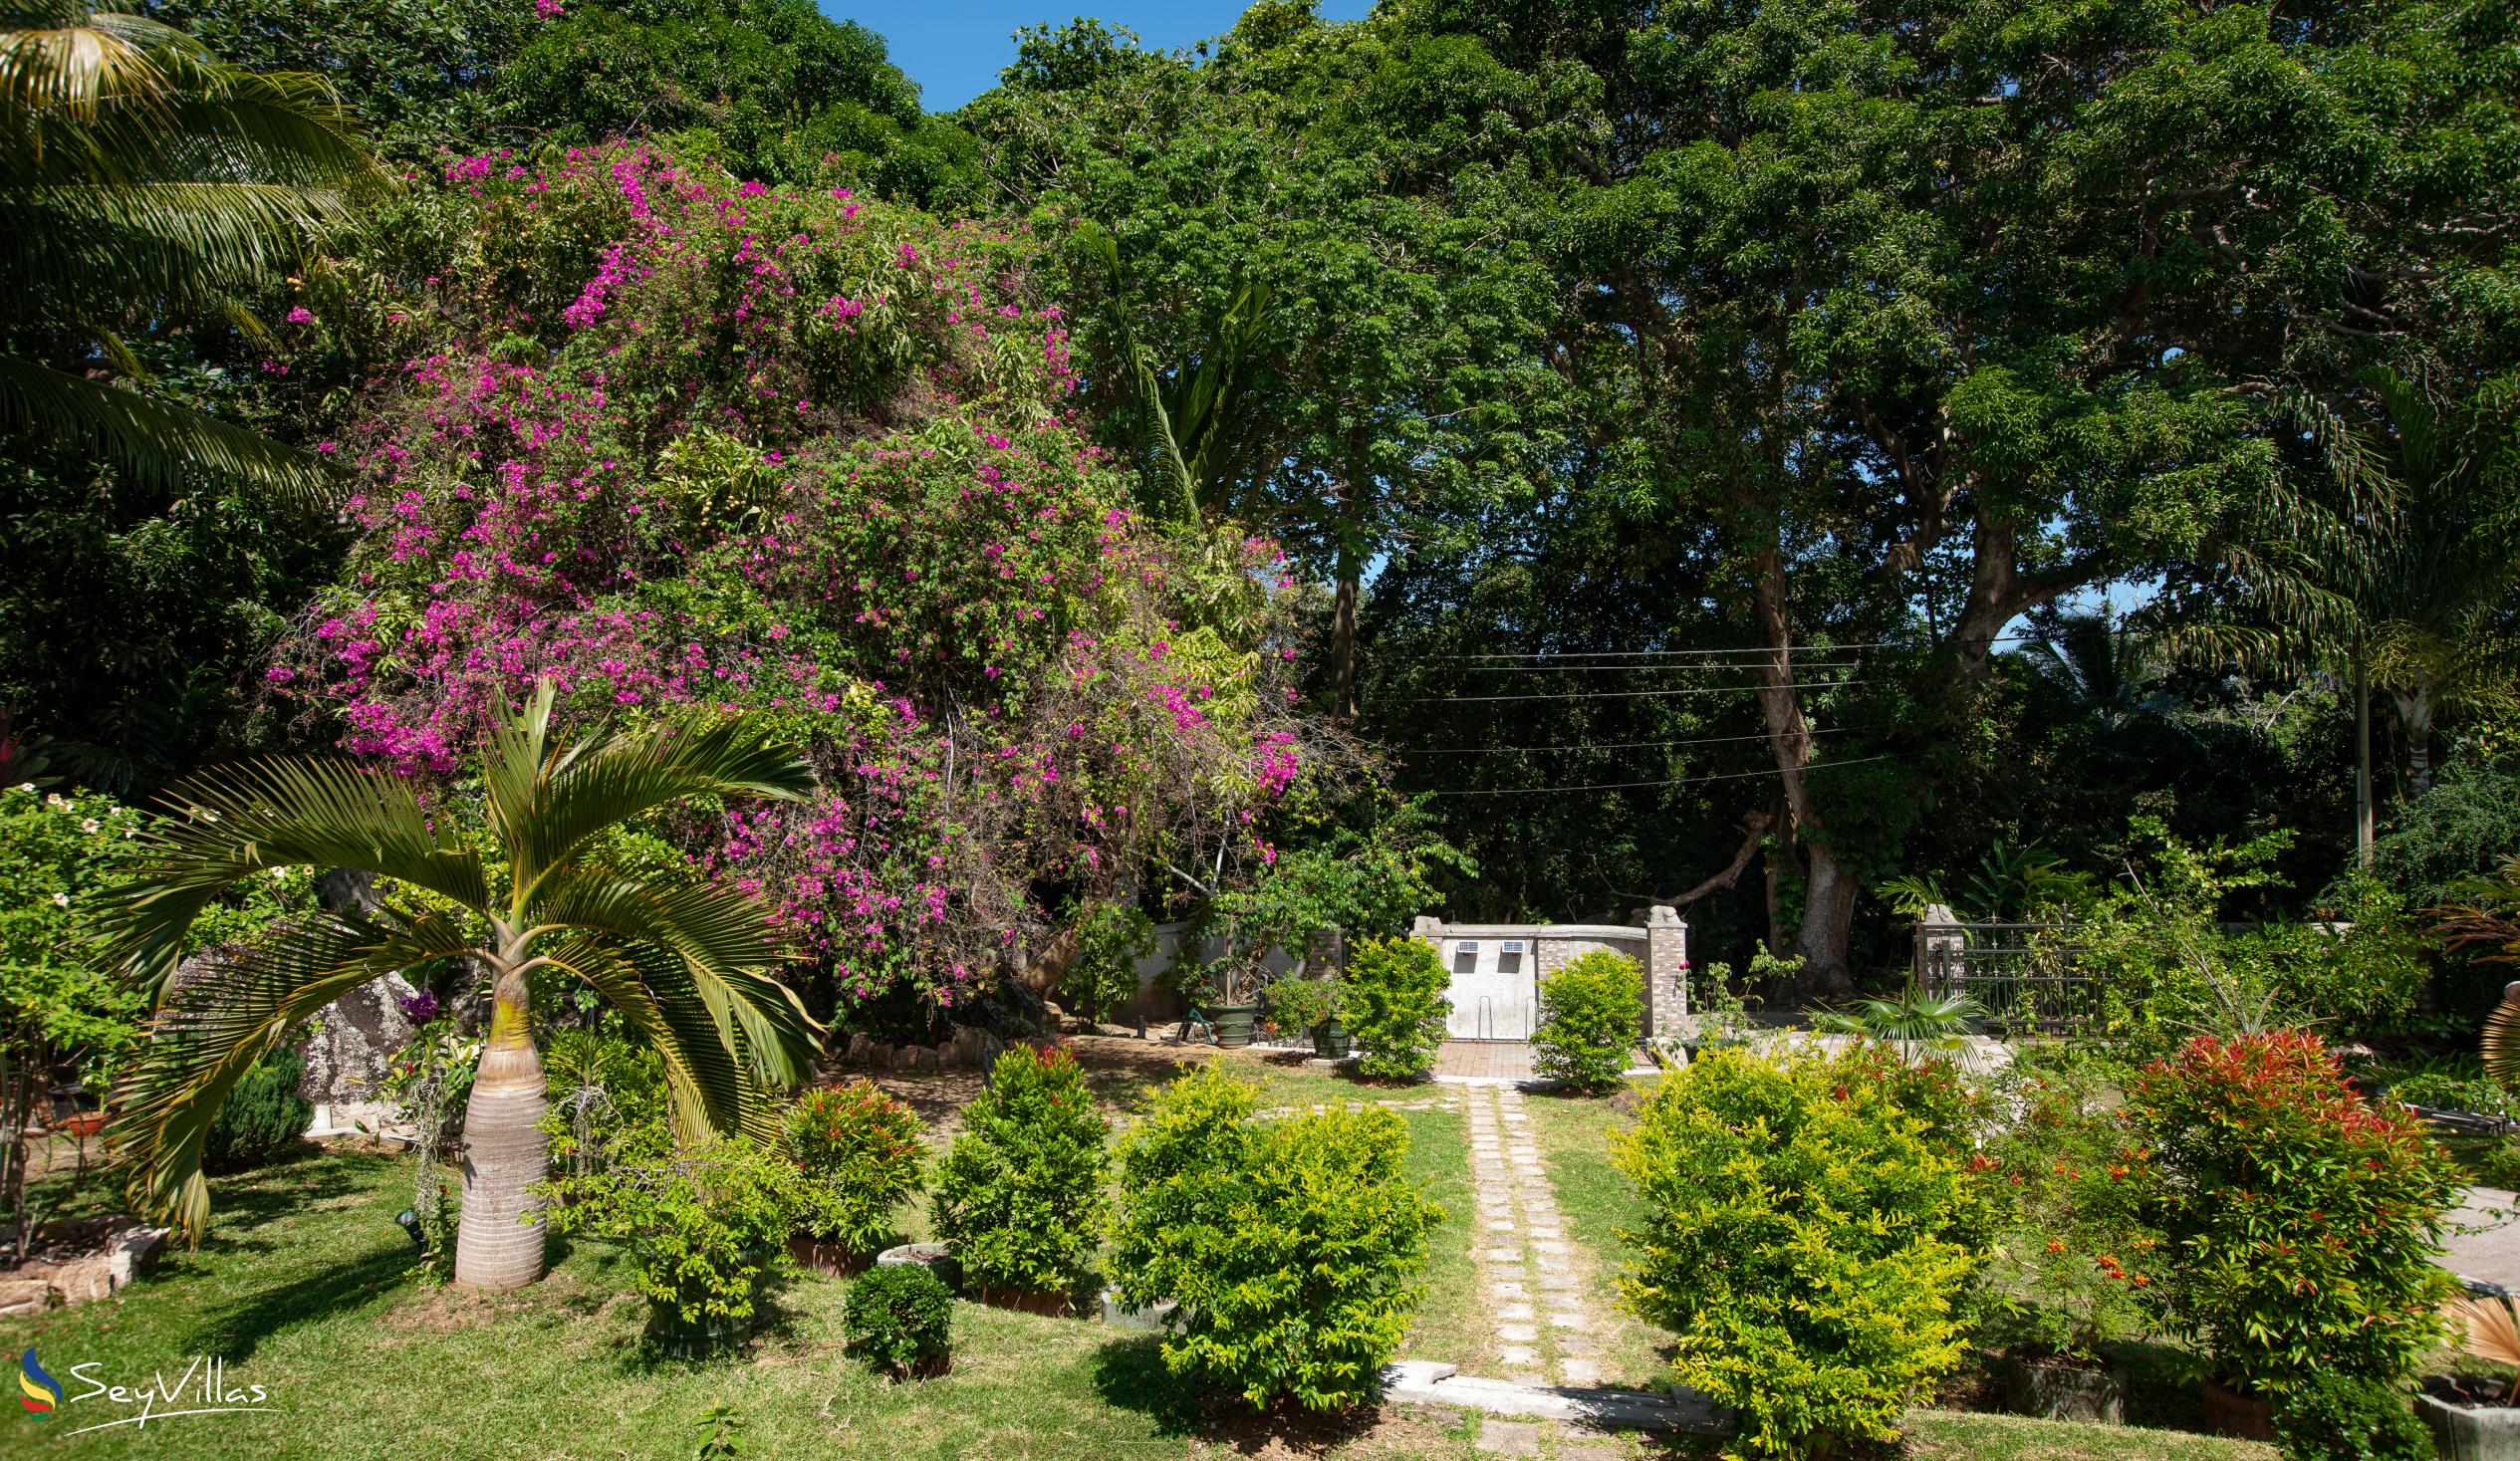 Foto 6: Pension Michel - Villa Roche Bois - Esterno - La Digue (Seychelles)